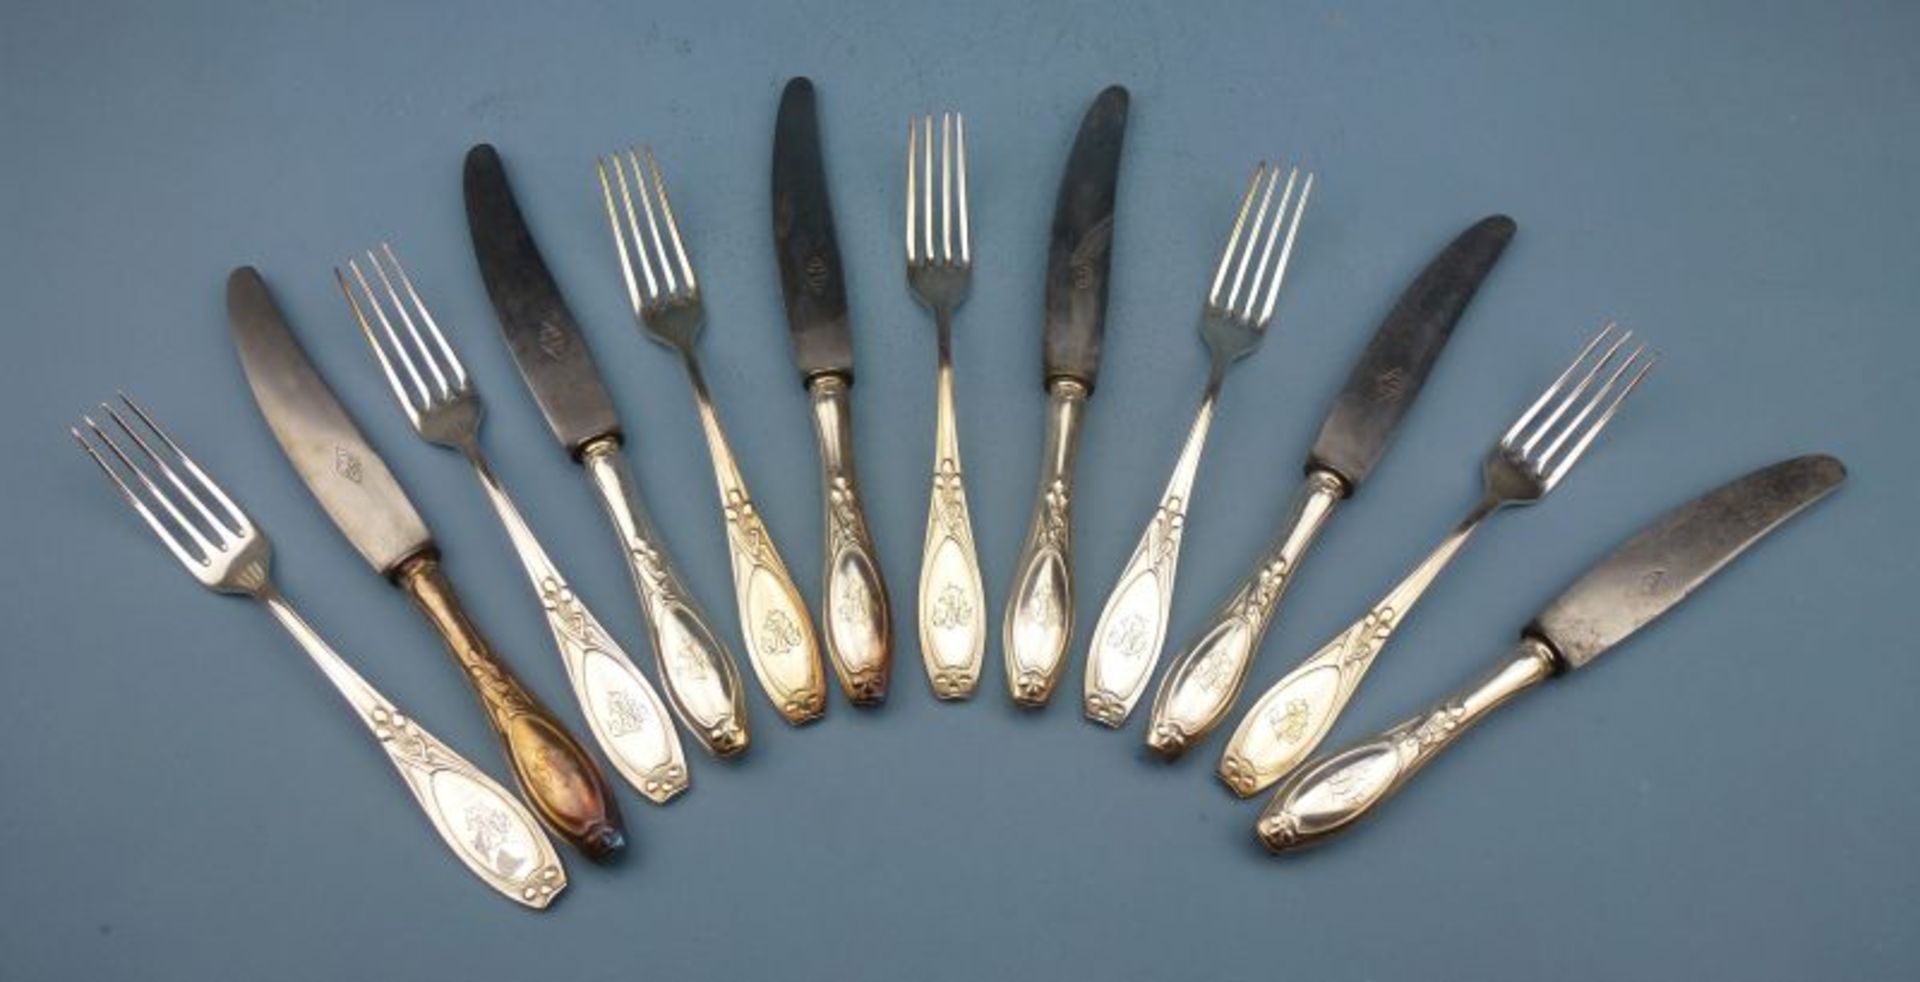 Messer und Gabeln für 6 Pers.Messer und Gabeln für 6 Pers.C.B. Schröder, Düsseldorf, um 1900